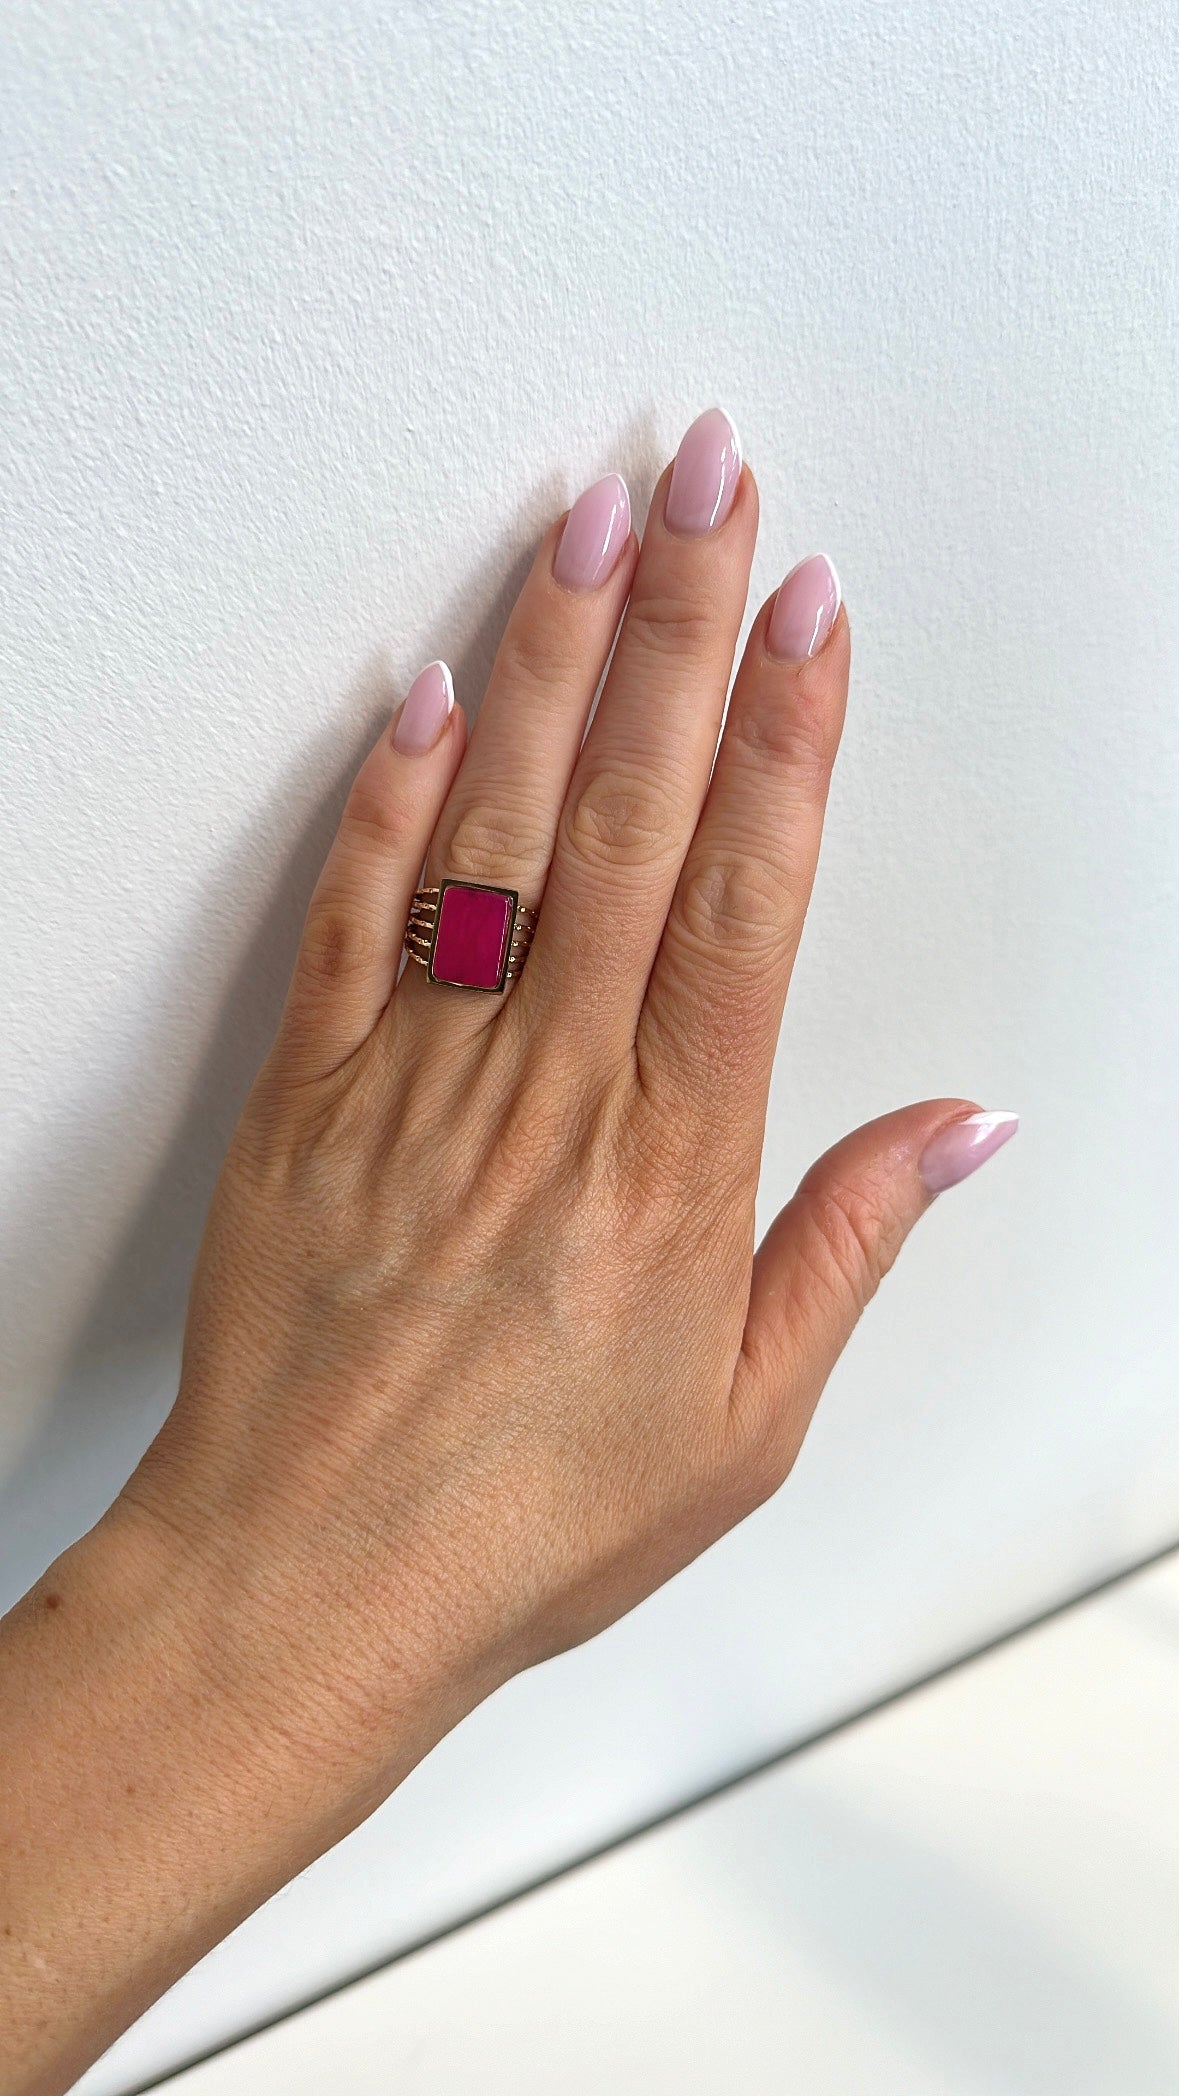 Koko pink adjustable ring